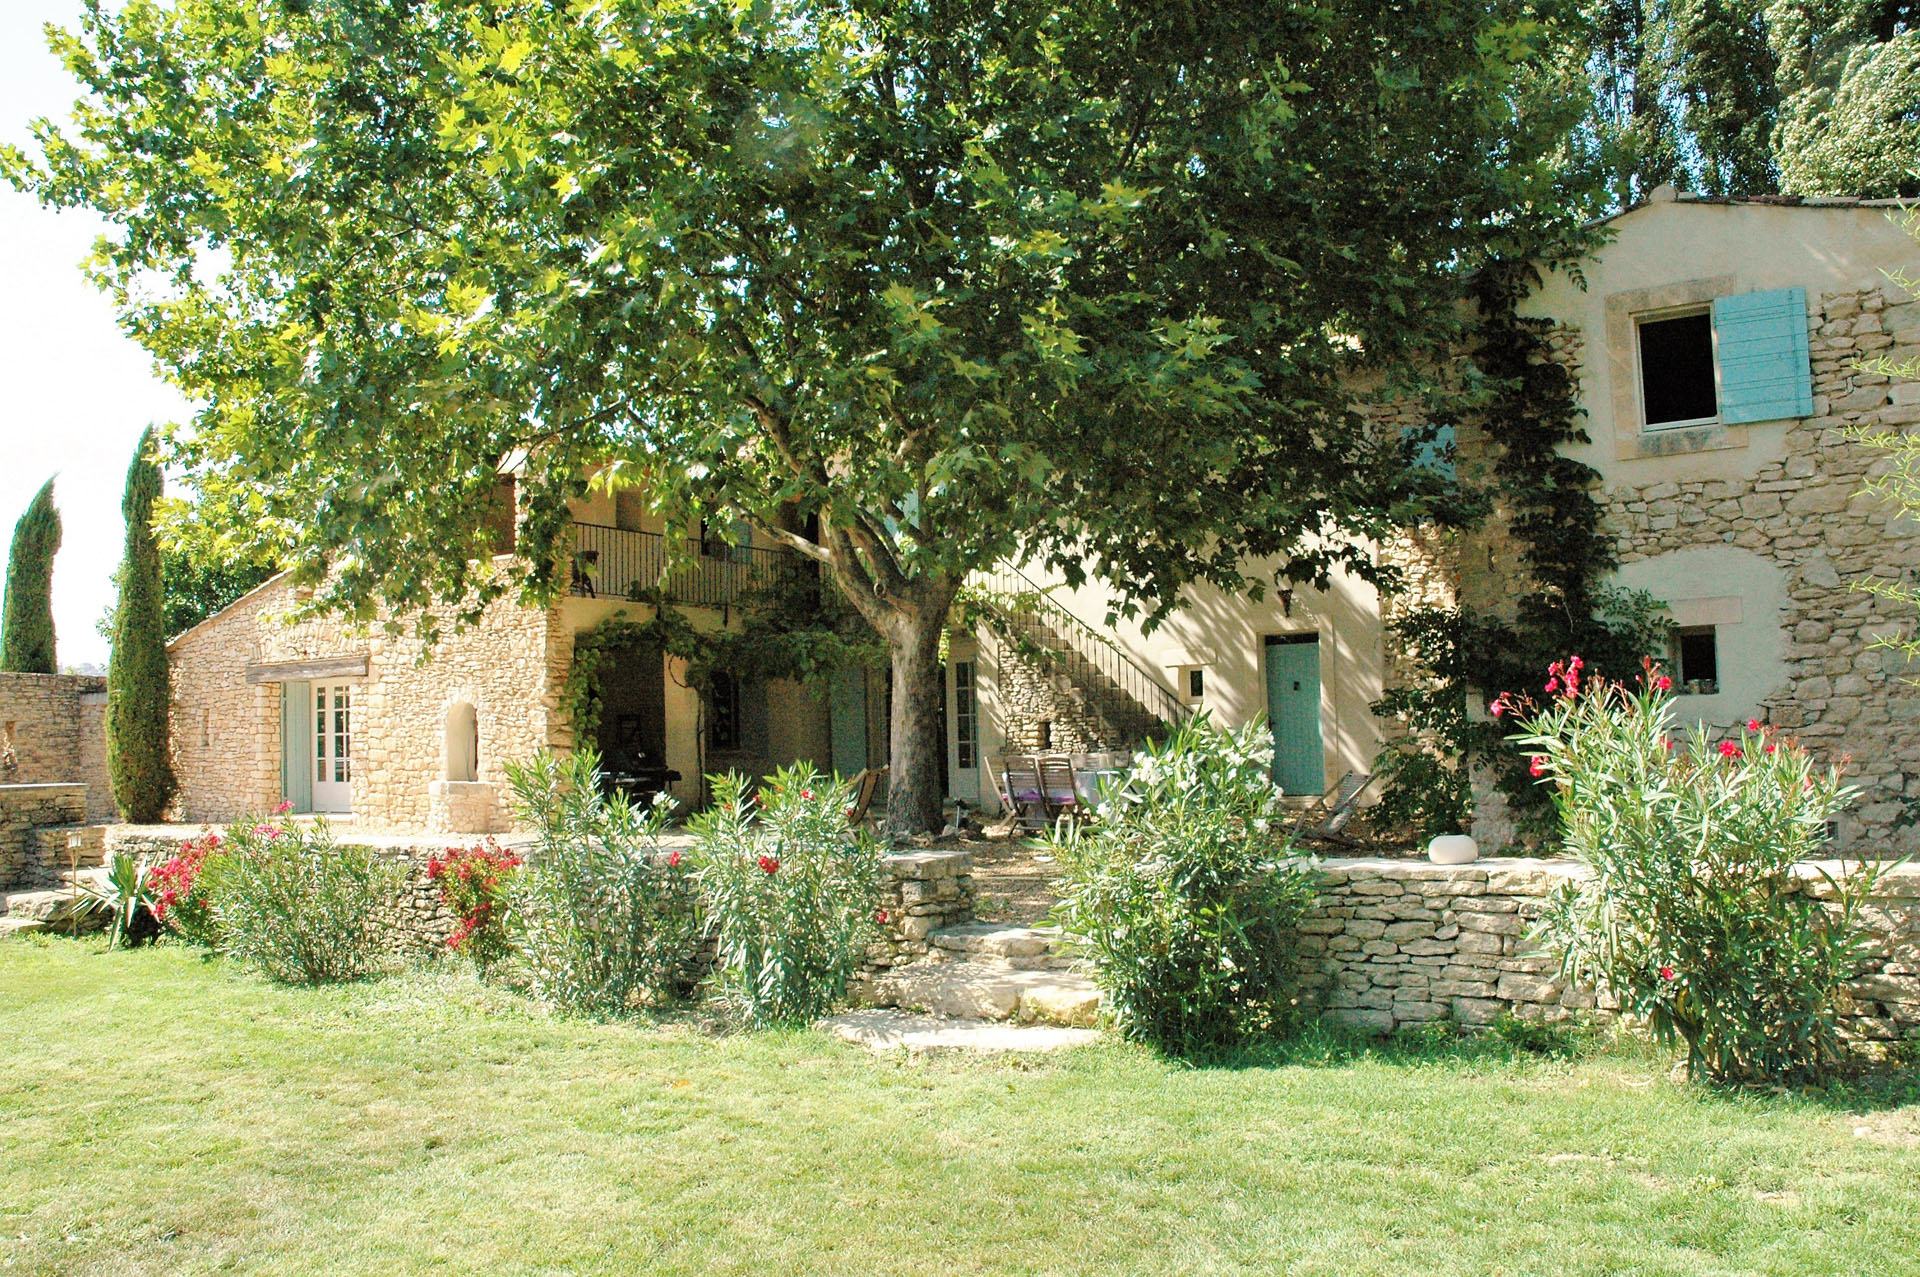 Location saisonnière en Luberon à 5 mn de Gordes, ferme restaurée avec soin  en pleine nature, au calme sur un grand terrain 